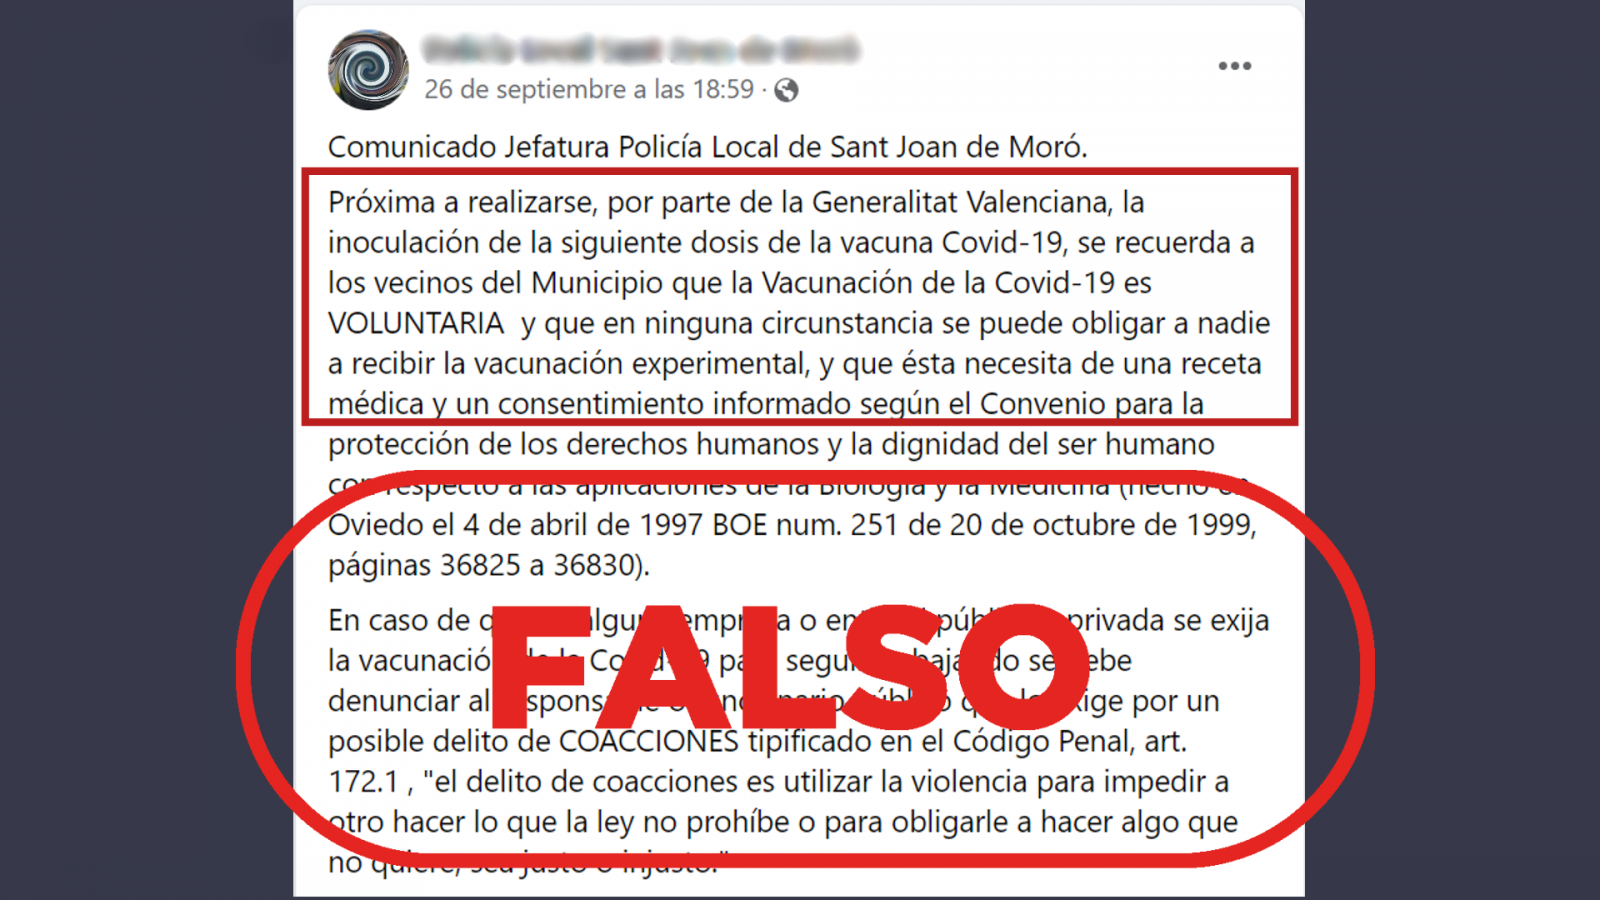 Comunicado de la Policía Local de Sant Joan de Moró (Castellón) en el que comparten argumentos falsos sobre la vacuna contra la COVID-19, con el sello 'Falso' en rojo